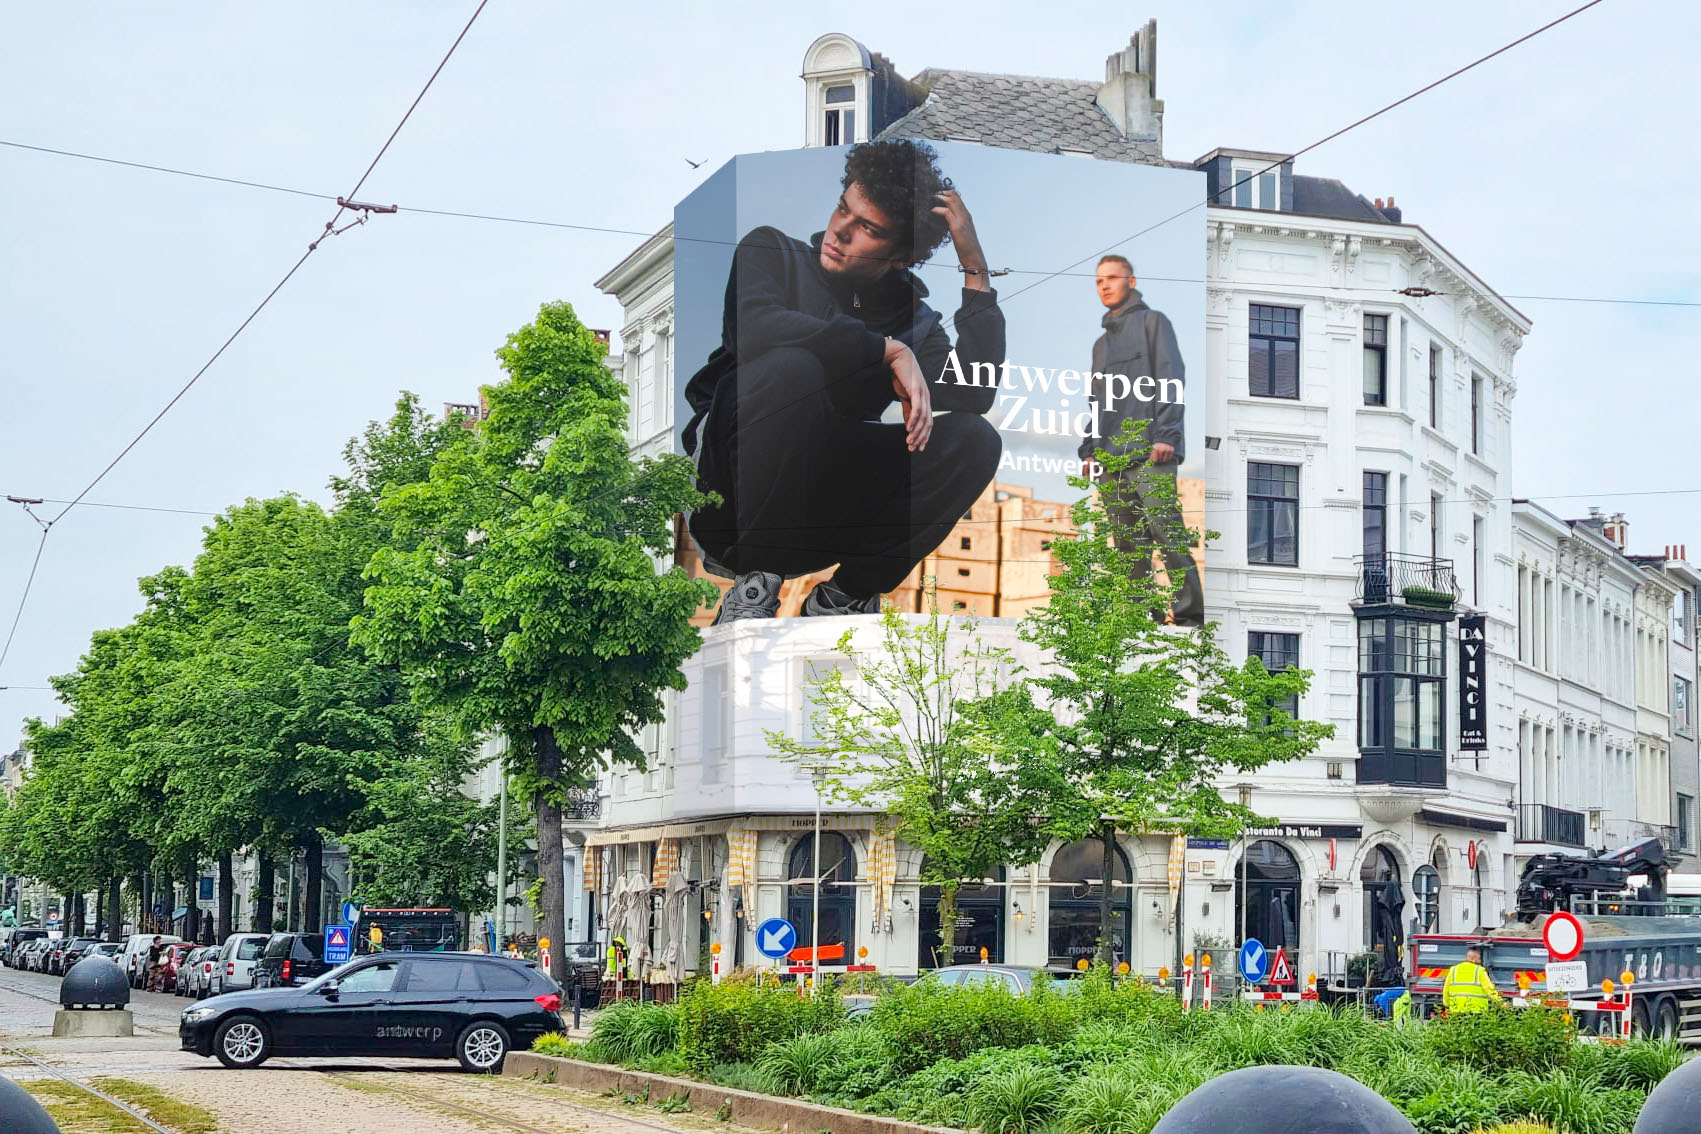 Antwerpen_Antwerpen Zuid_I.jpg